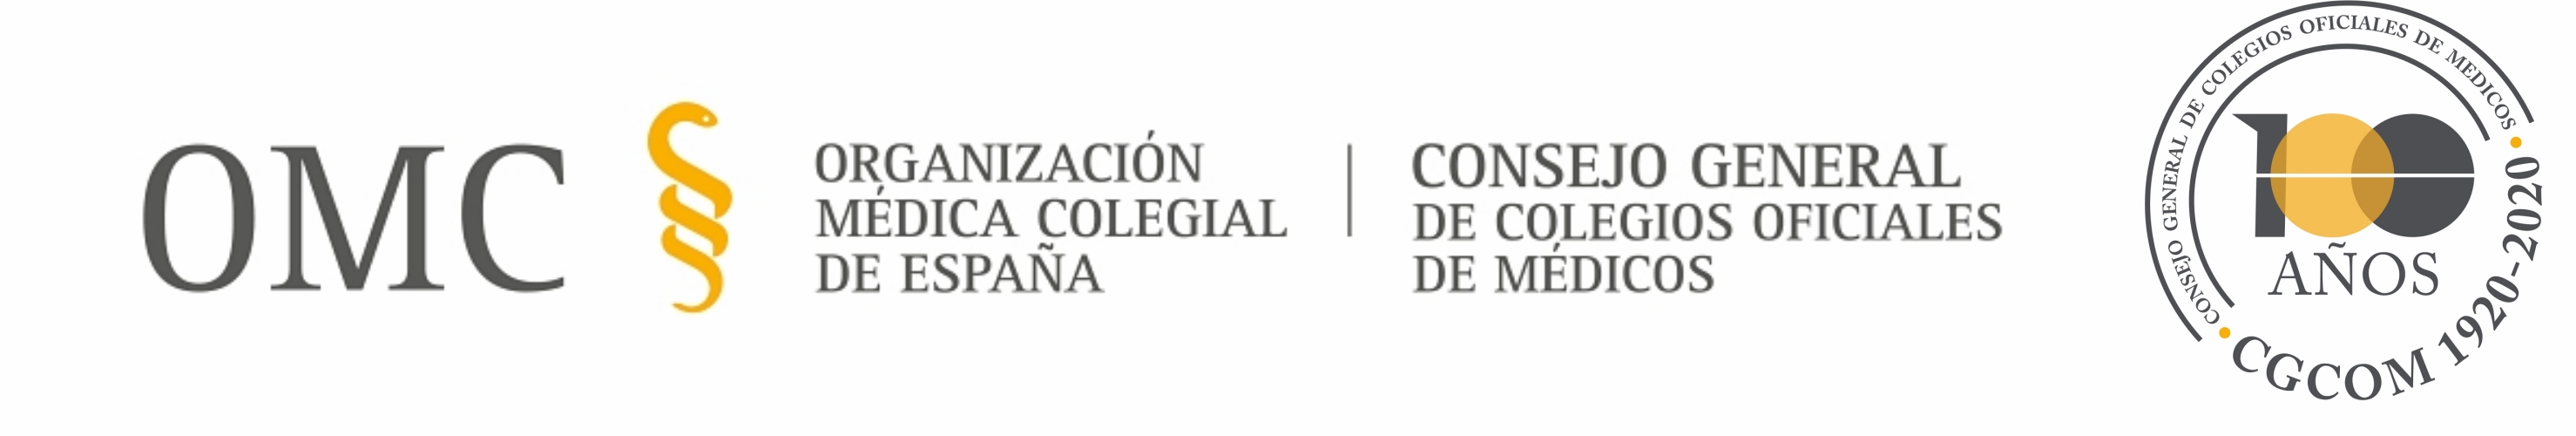 Logotipo centenario